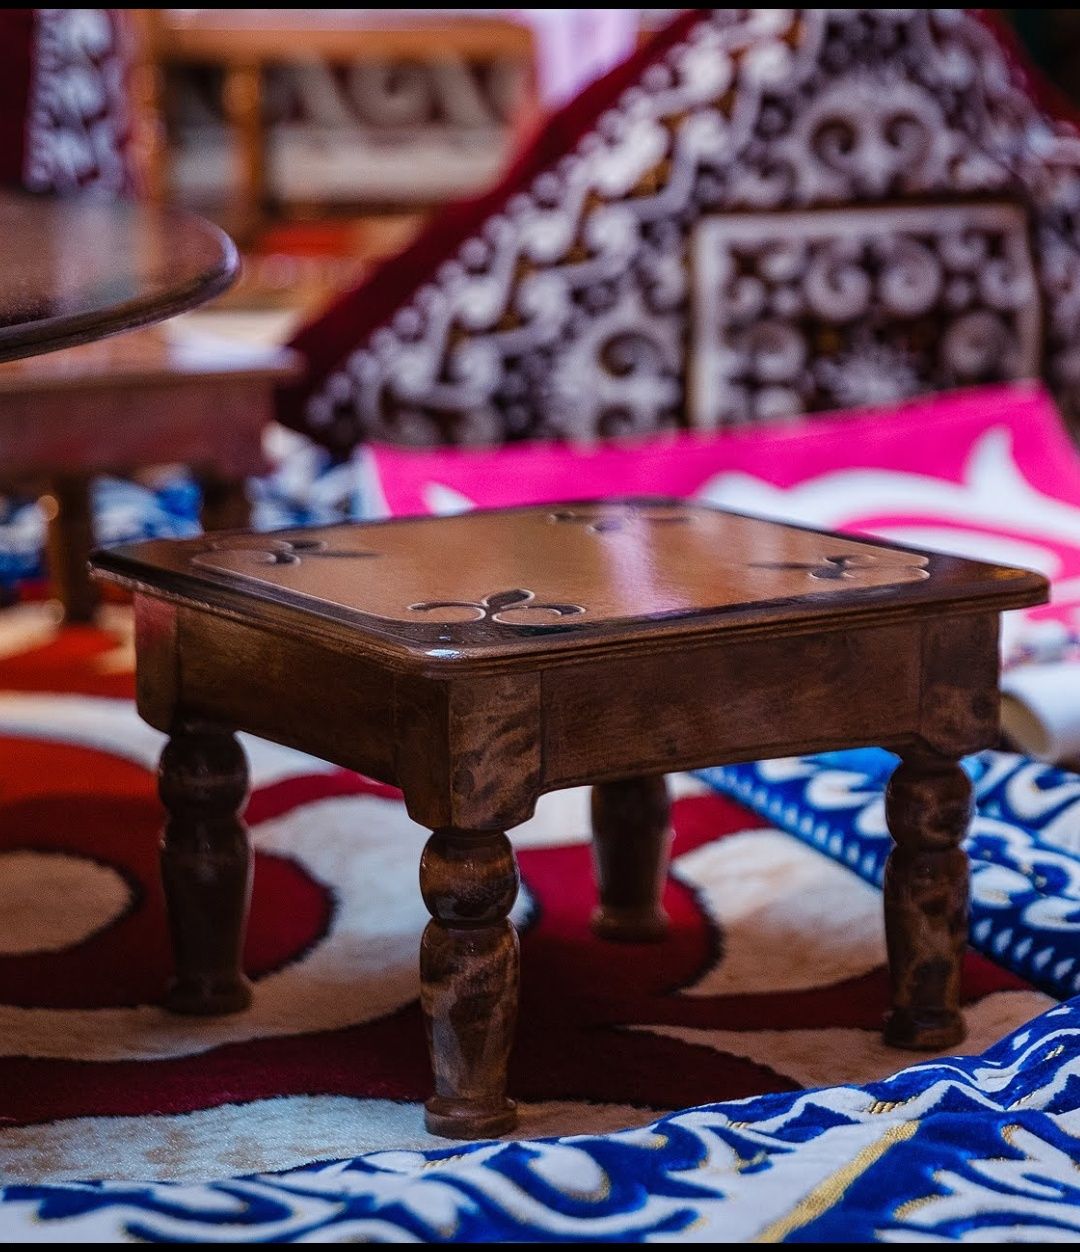 Стол казахский,складной,сундук,бесик, кровати детские, мебель дерево